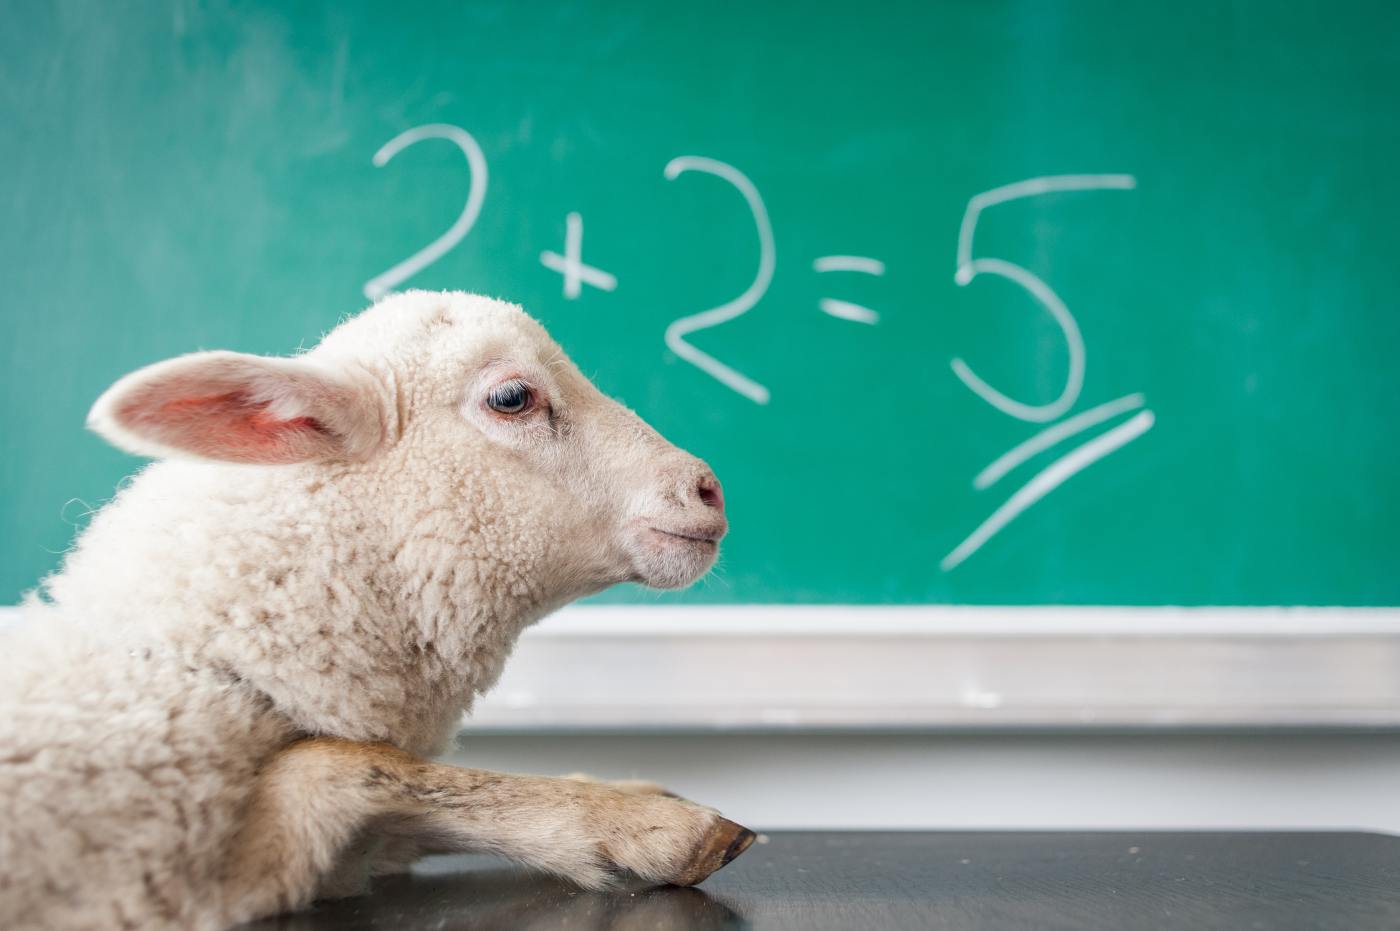 Stupid sheep and equation